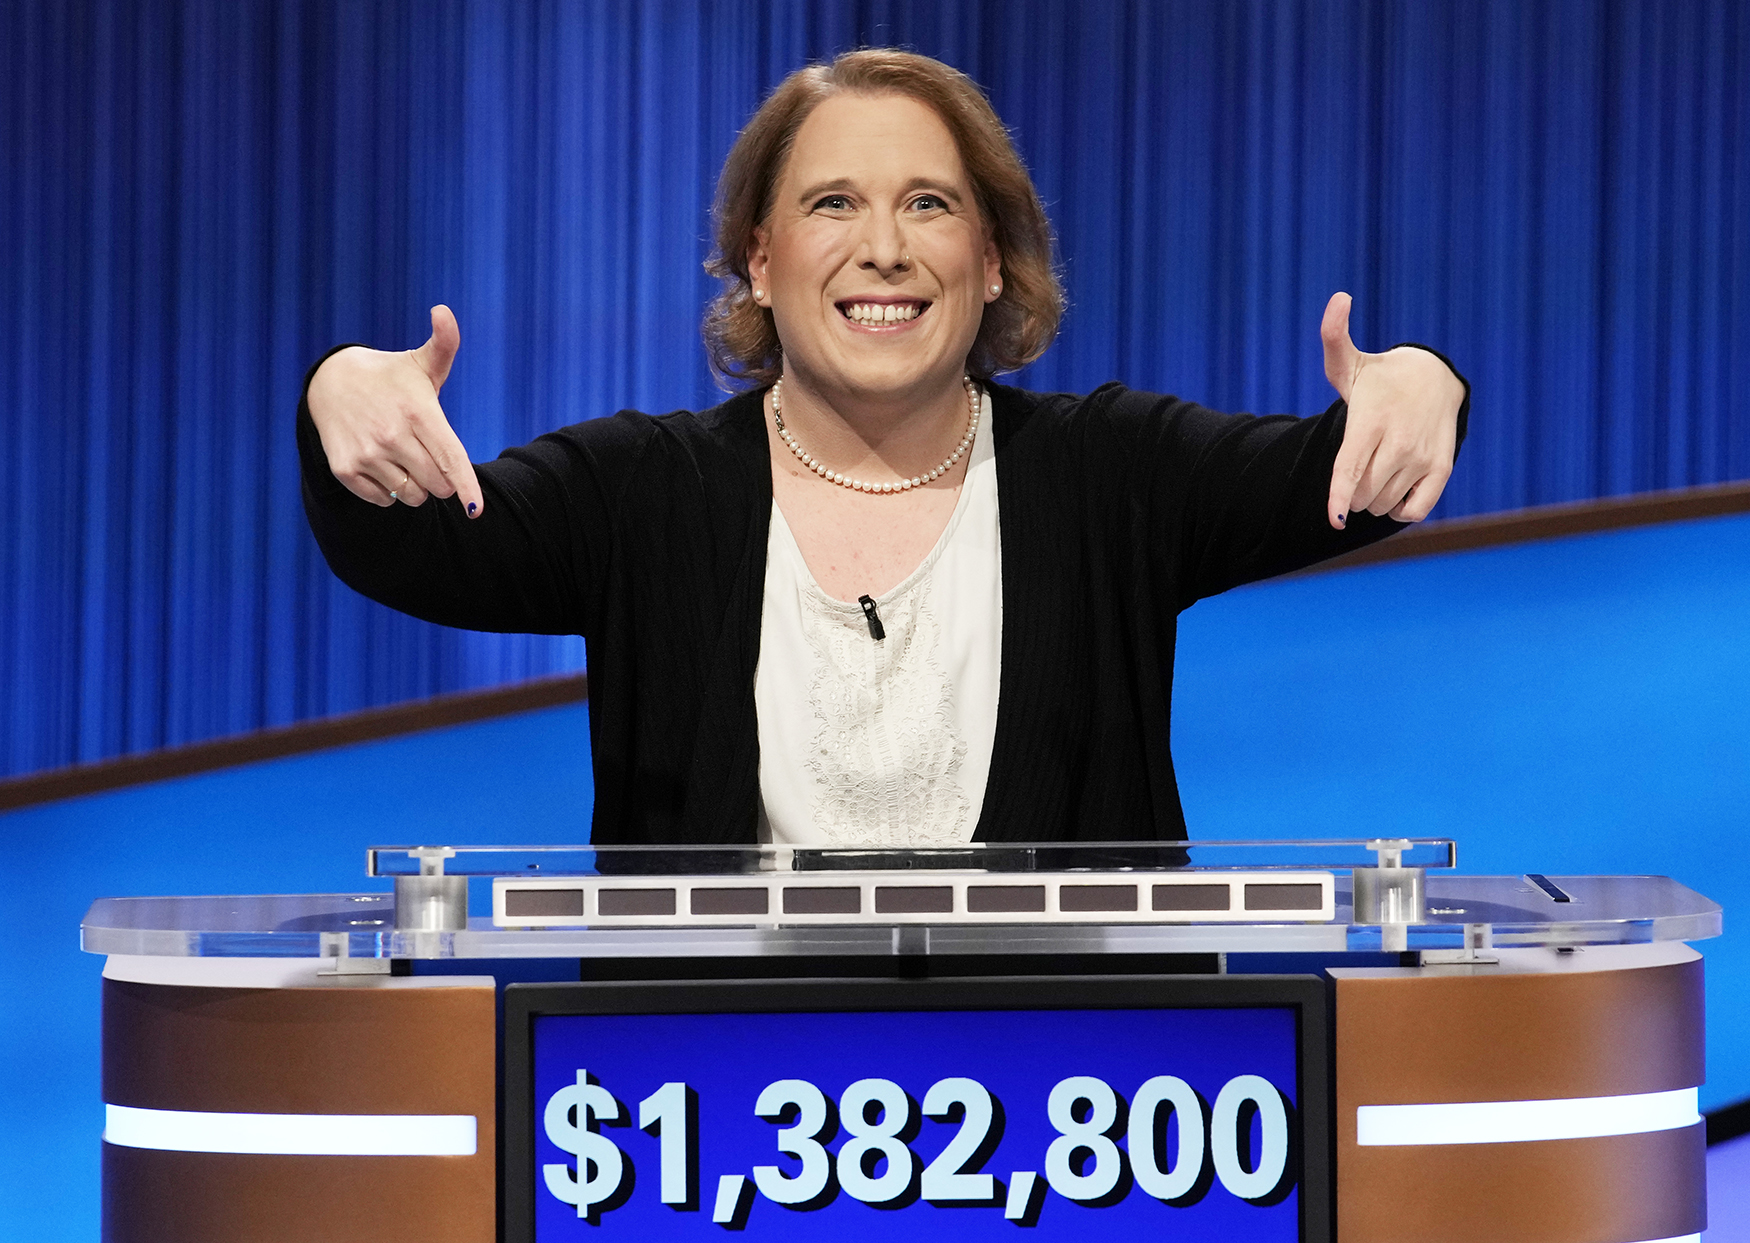 Amy's final winnings in Jeopardy